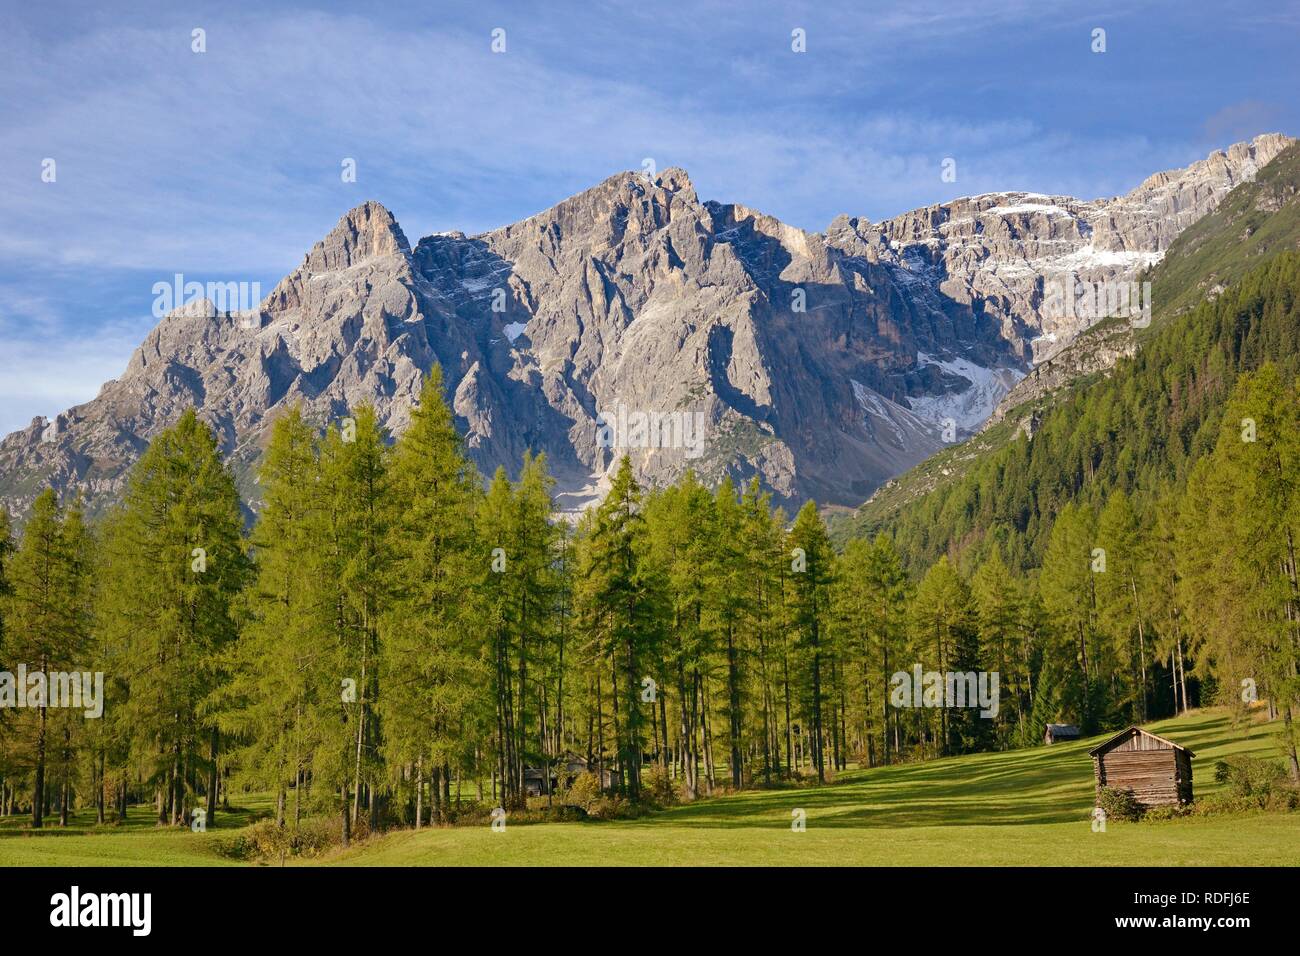 Fischleintal, haystacks on the mountain meadows, mountain forest and mountain range, Sexten Dolomites, South Tyrol, Italy Stock Photo